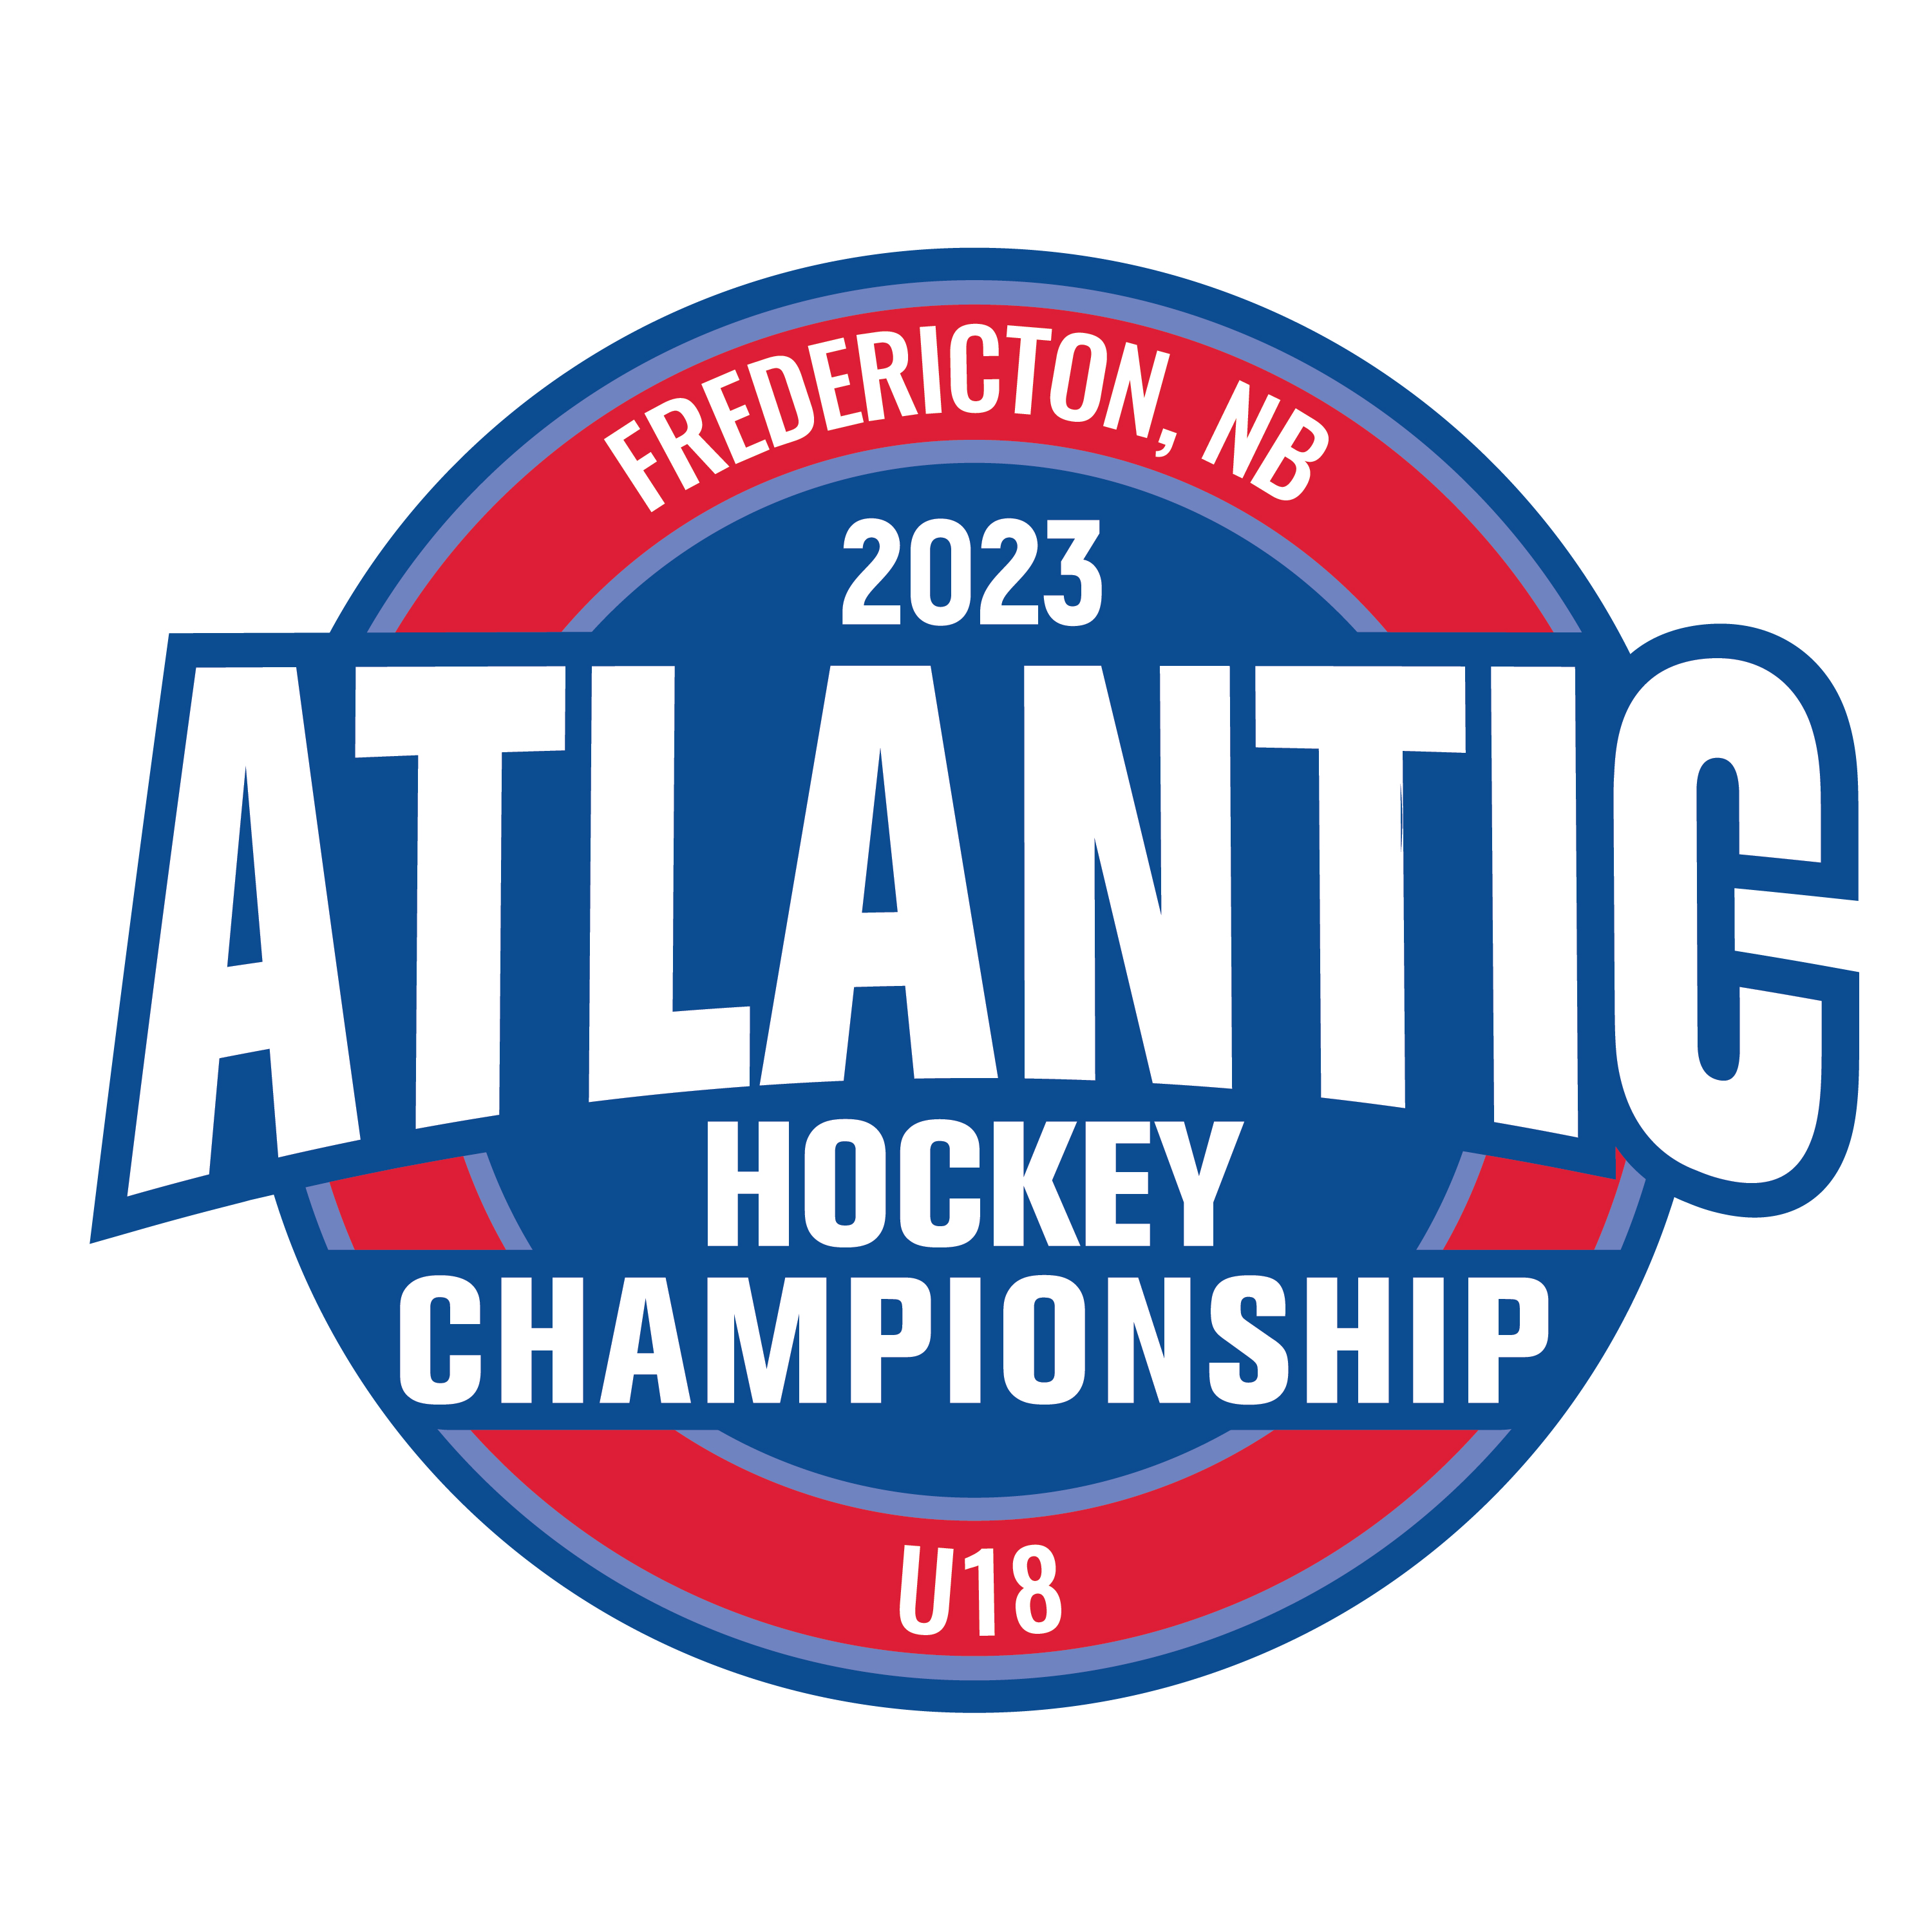 Le championnat de hockey U18 de l’Atlantique aura lieu à Fredericton, au Nouveau‑Brunswick